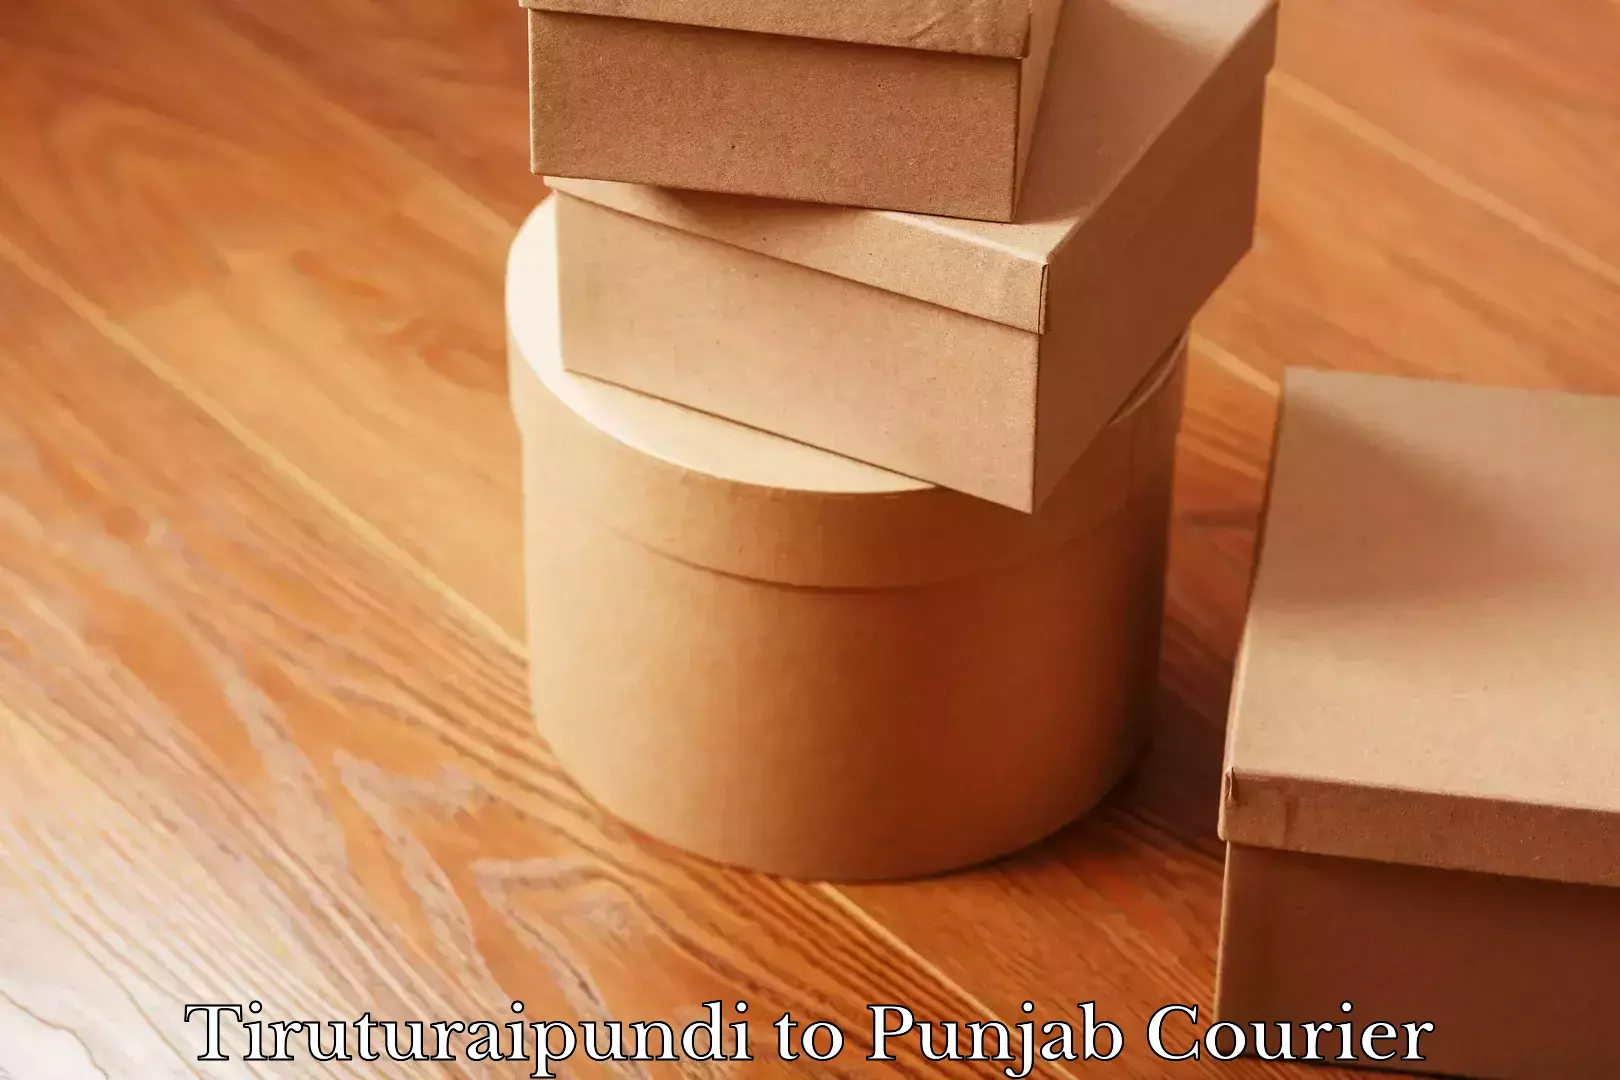 Large package courier Tiruturaipundi to Punjab